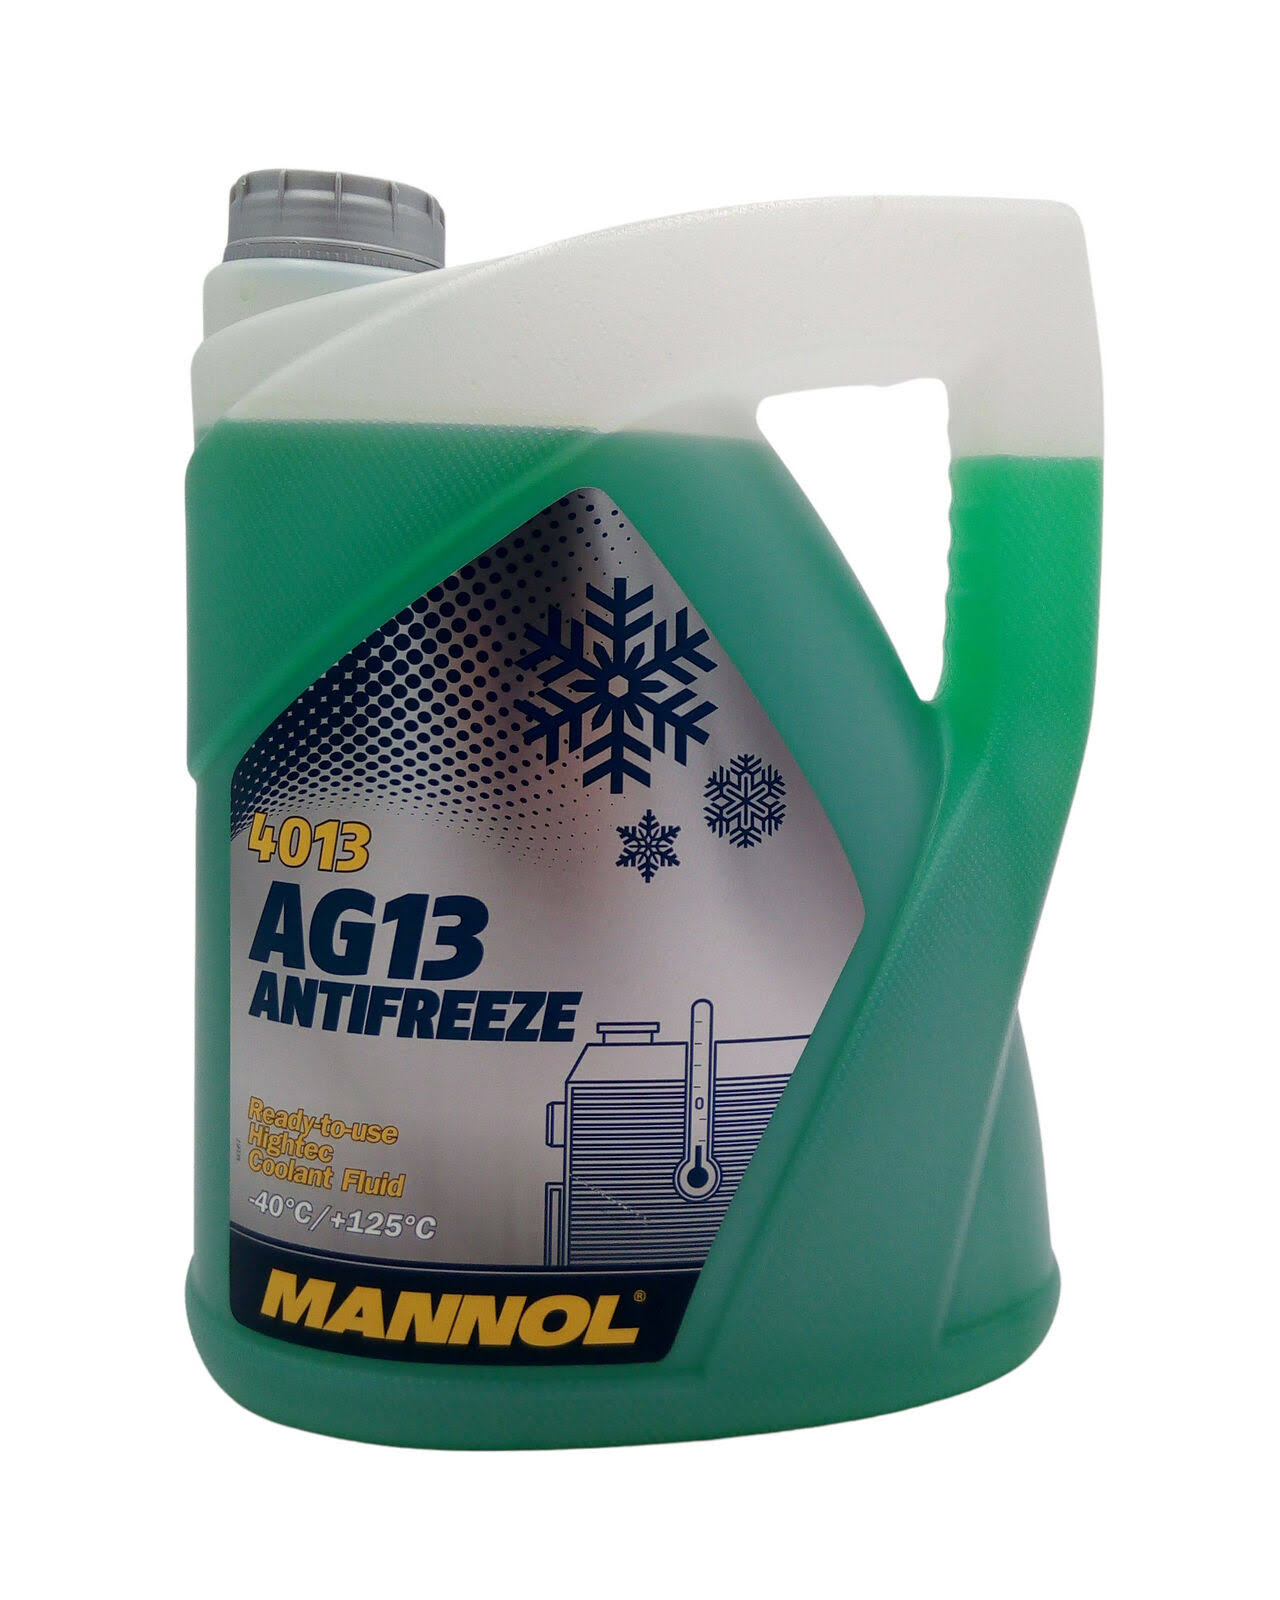 Mannol AG13 Hightec Anti-Freeze